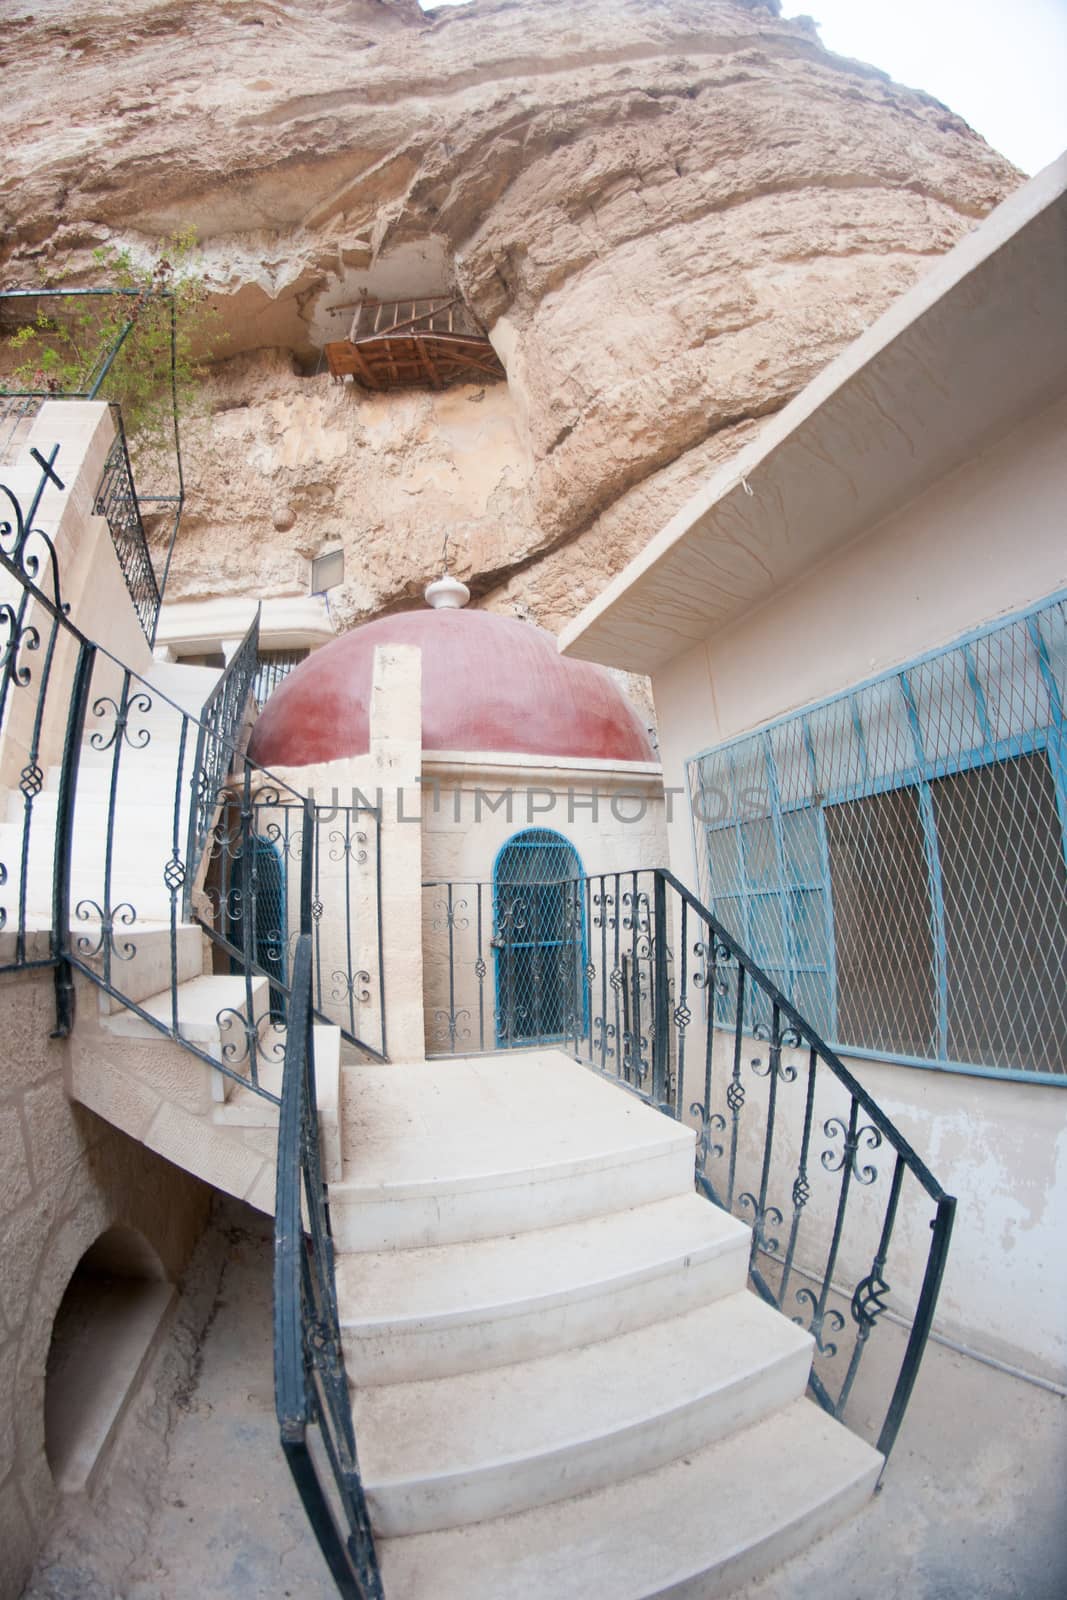 Saint George monastery in judean desert by javax